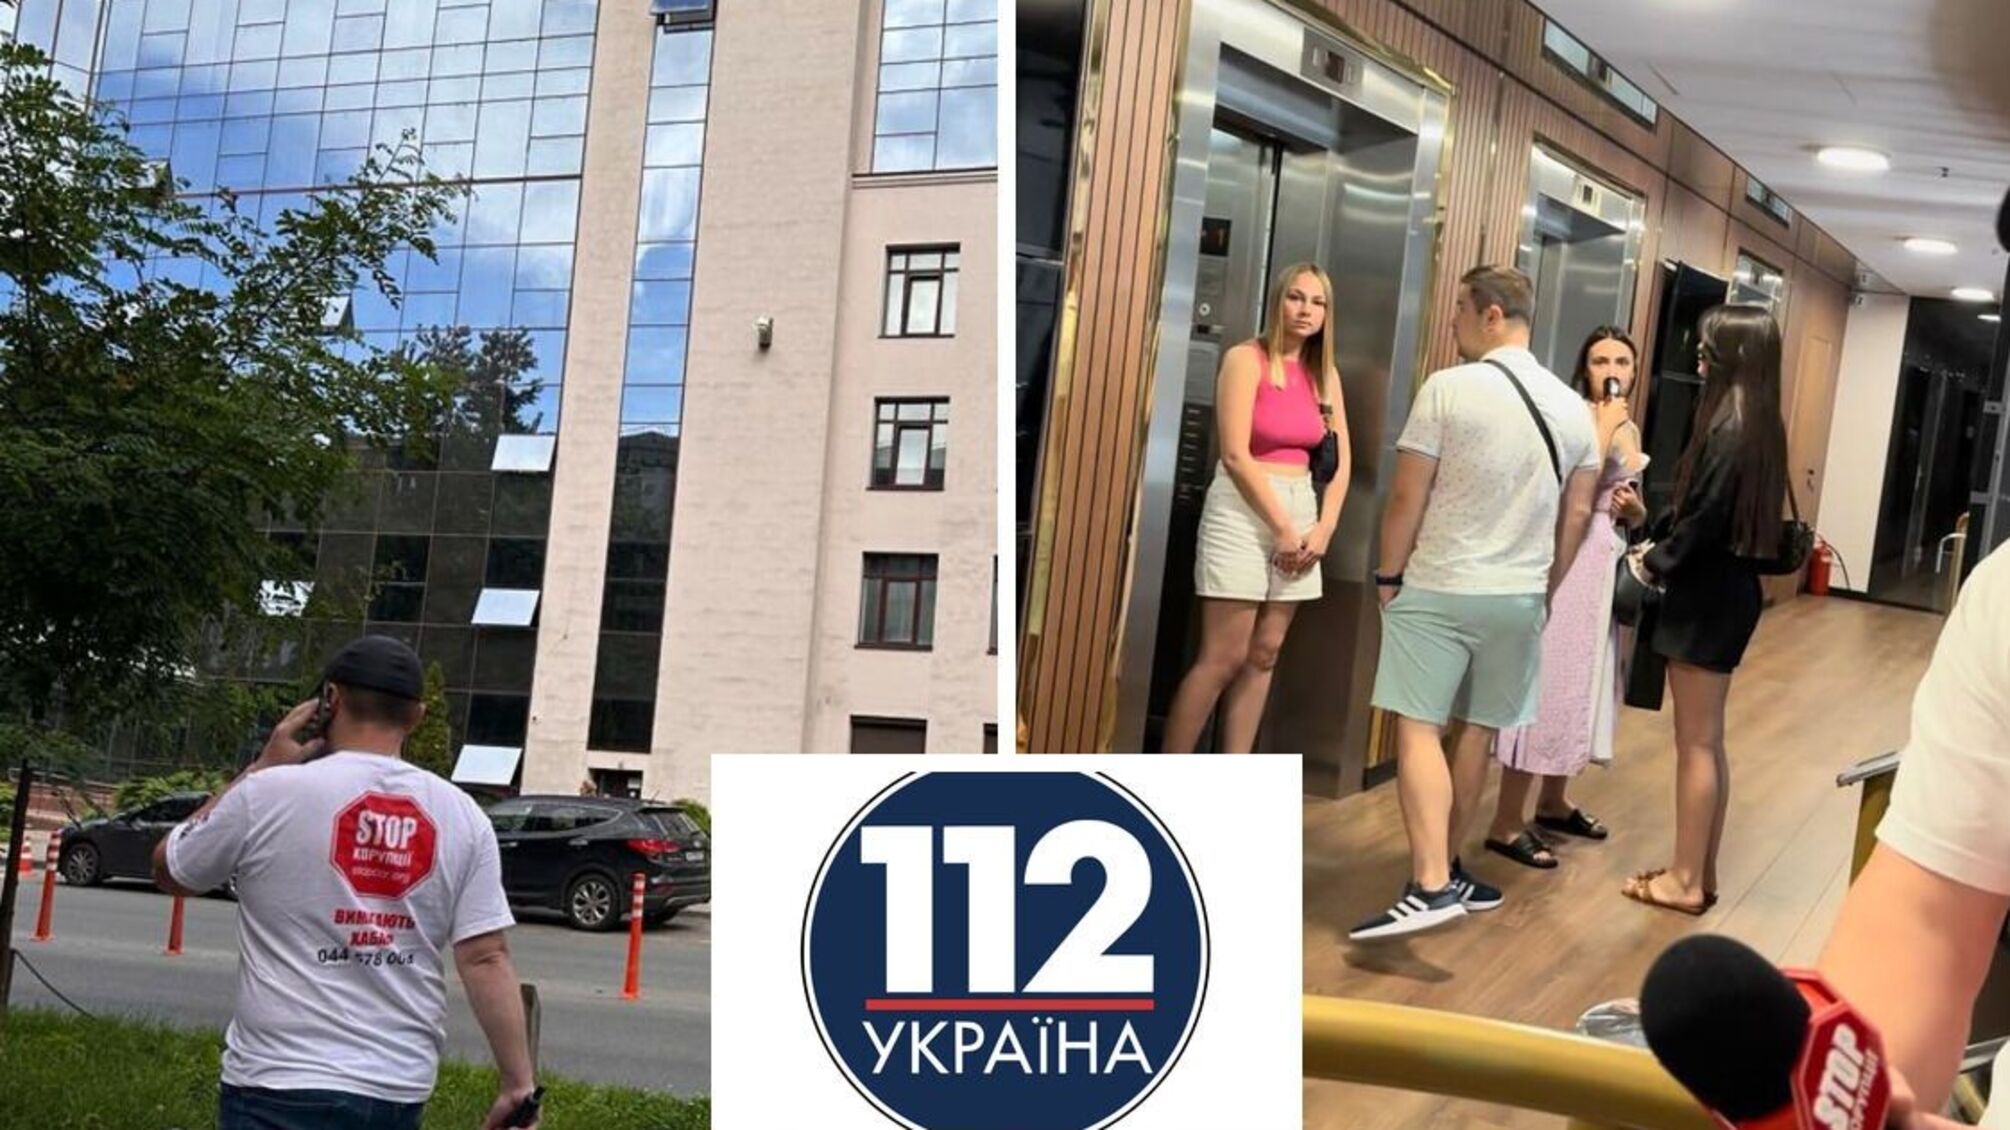 мошеннический колл-центр в бывшем здании телеканала ''112 Украина''